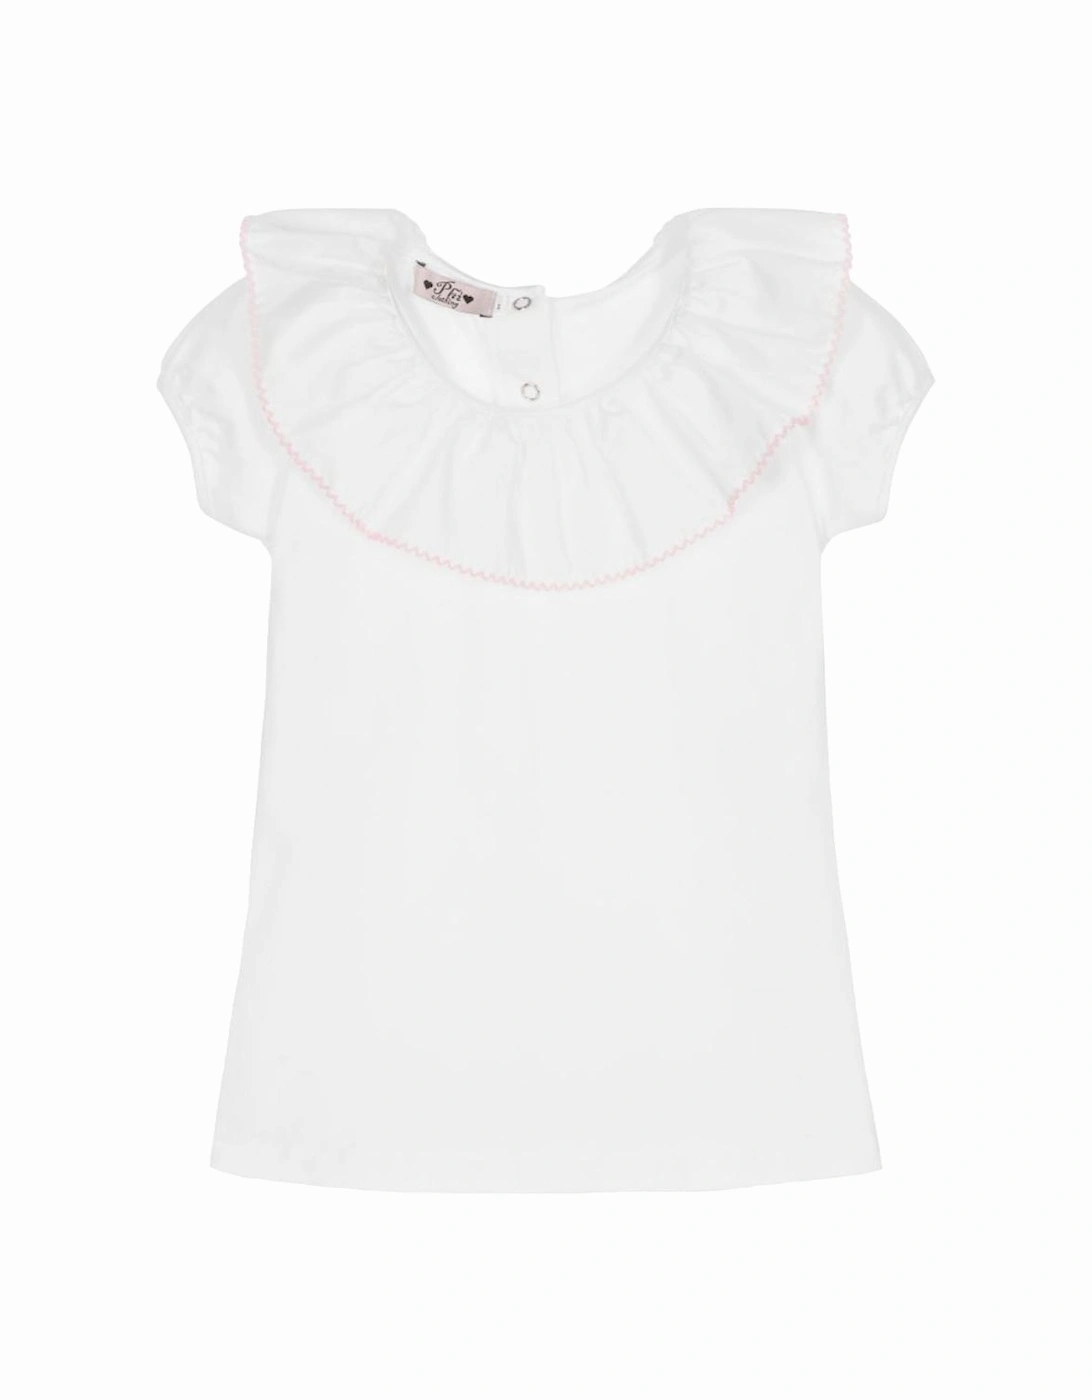 Girls White Ruffle T-Shirt, 2 of 1